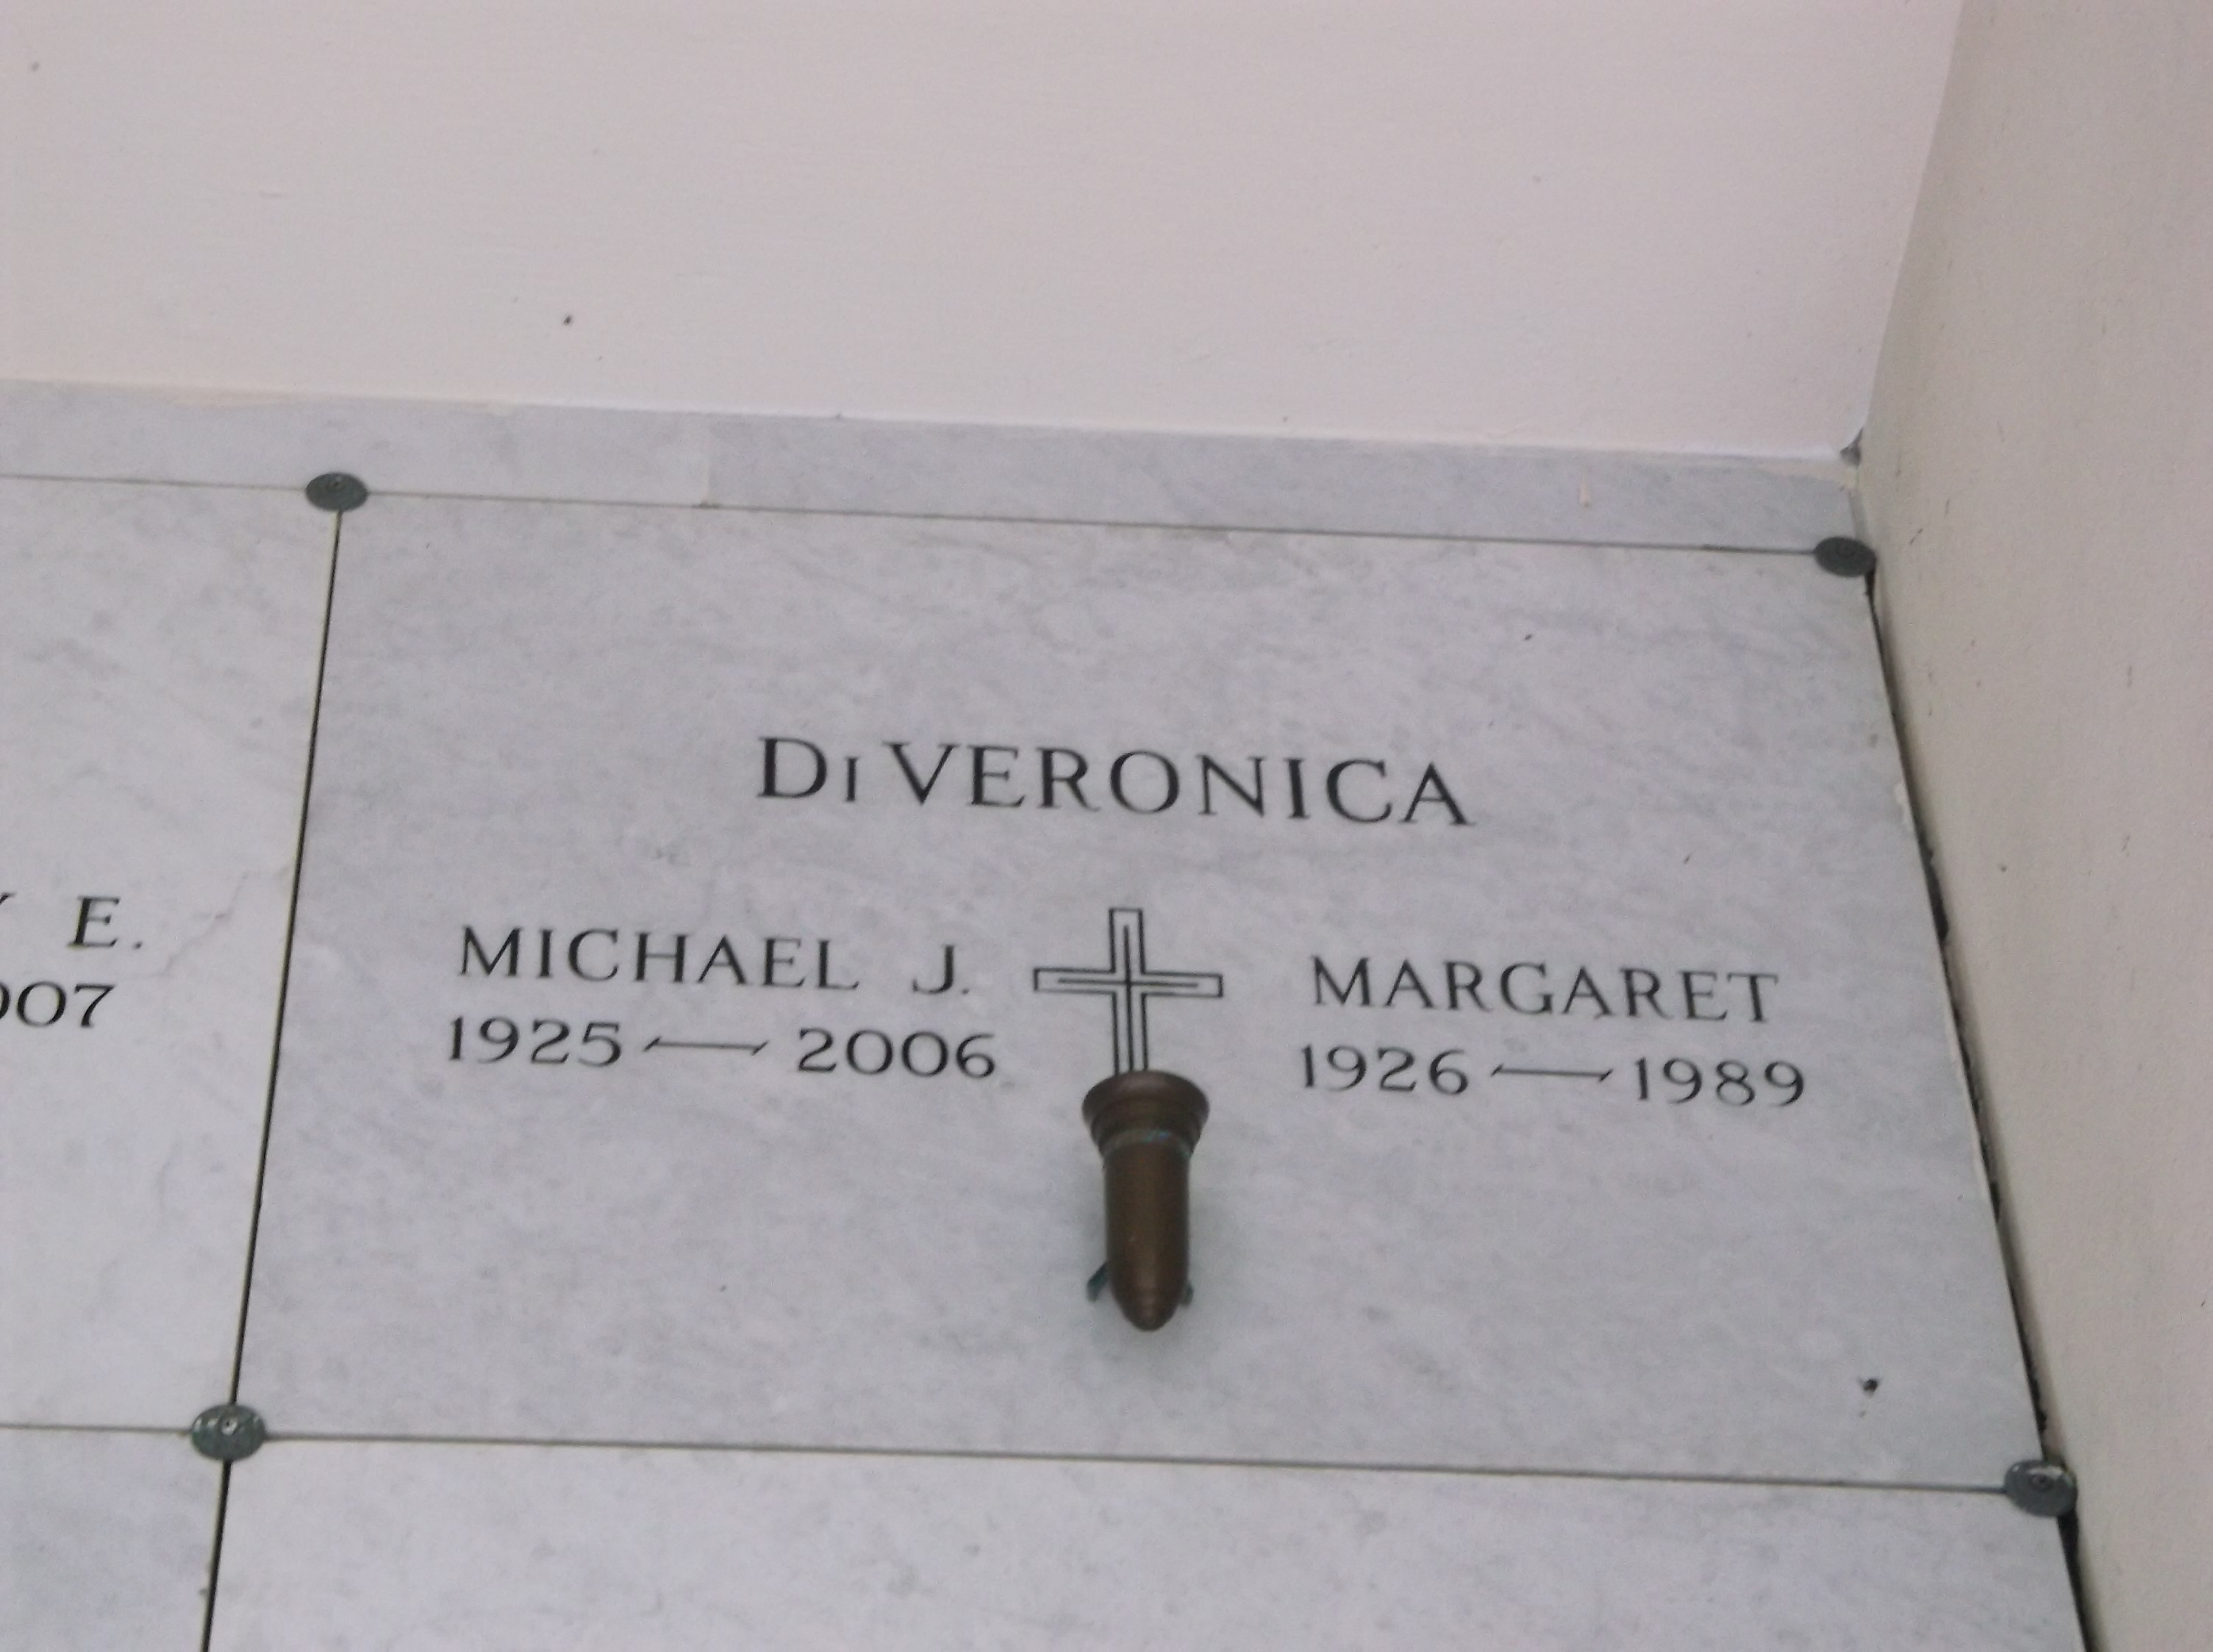 Margaret DiVeronica